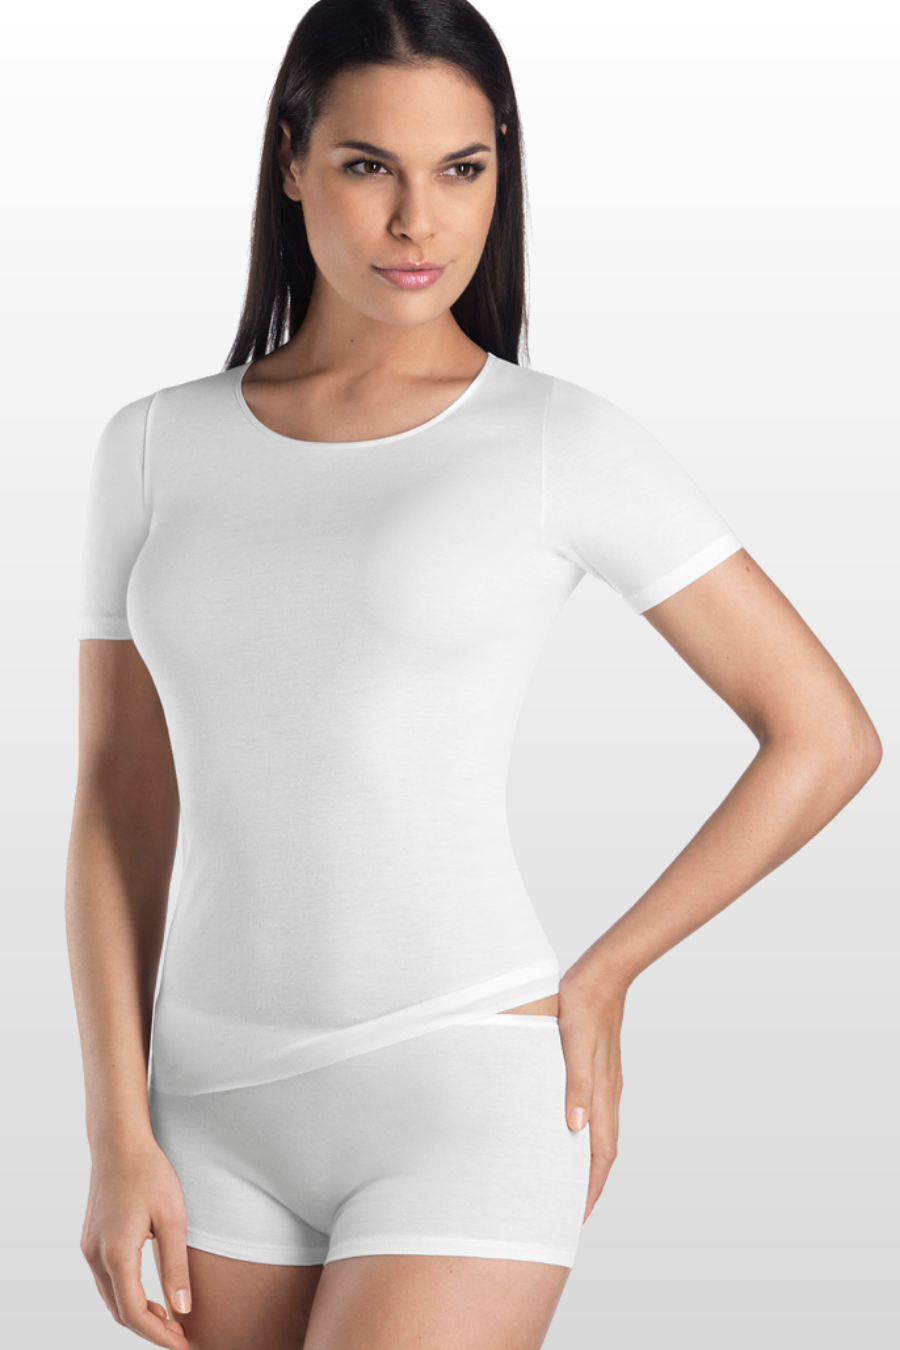 Cotton Seamless Short Sleeve Shirt